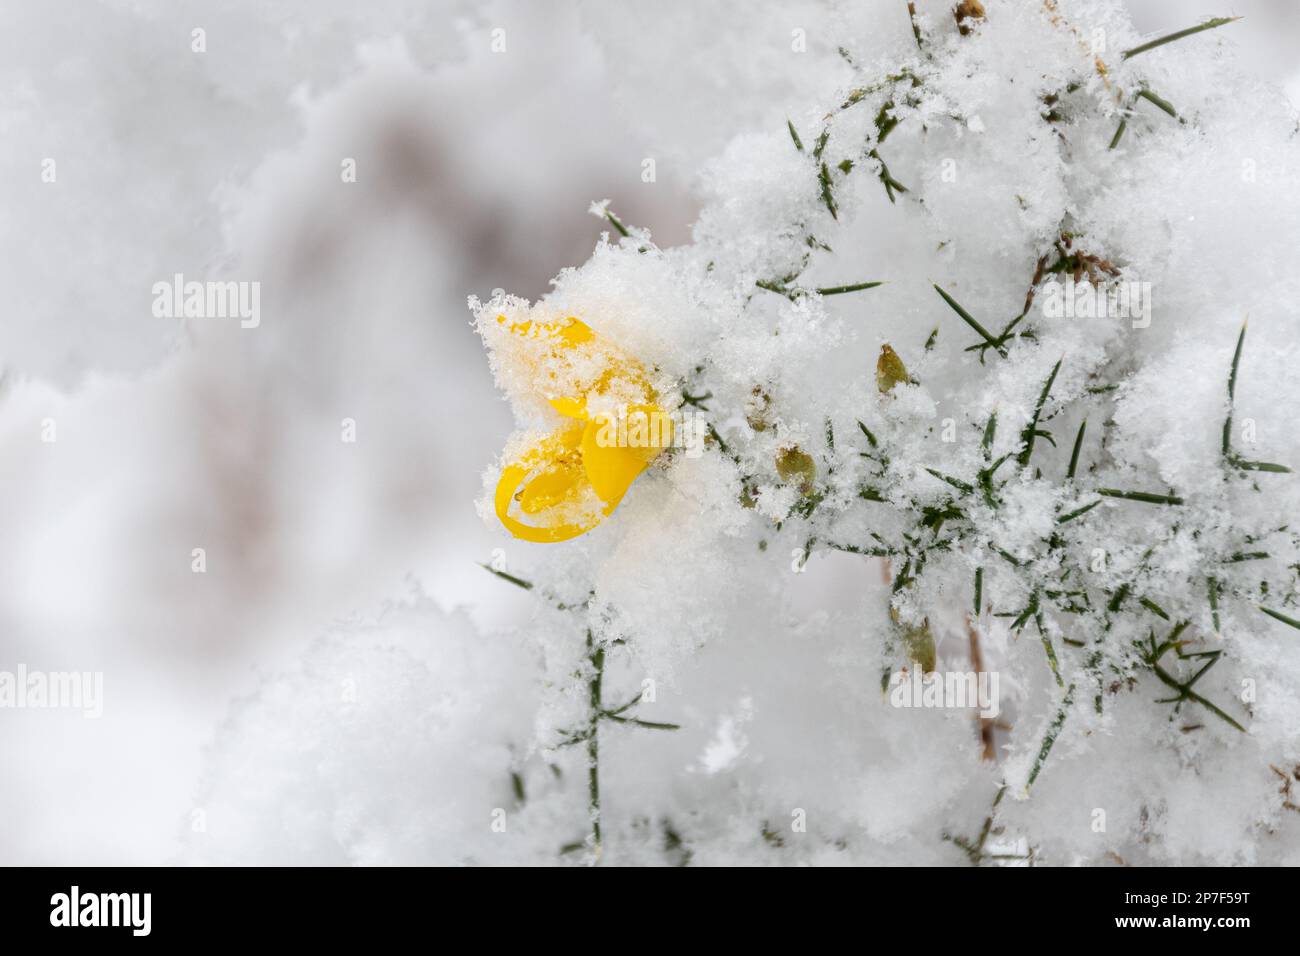 Buisson de gorge (Ulex europaeus) aux fleurs jaunes recouvertes de neige au début du printemps, Angleterre, Royaume-Uni Banque D'Images